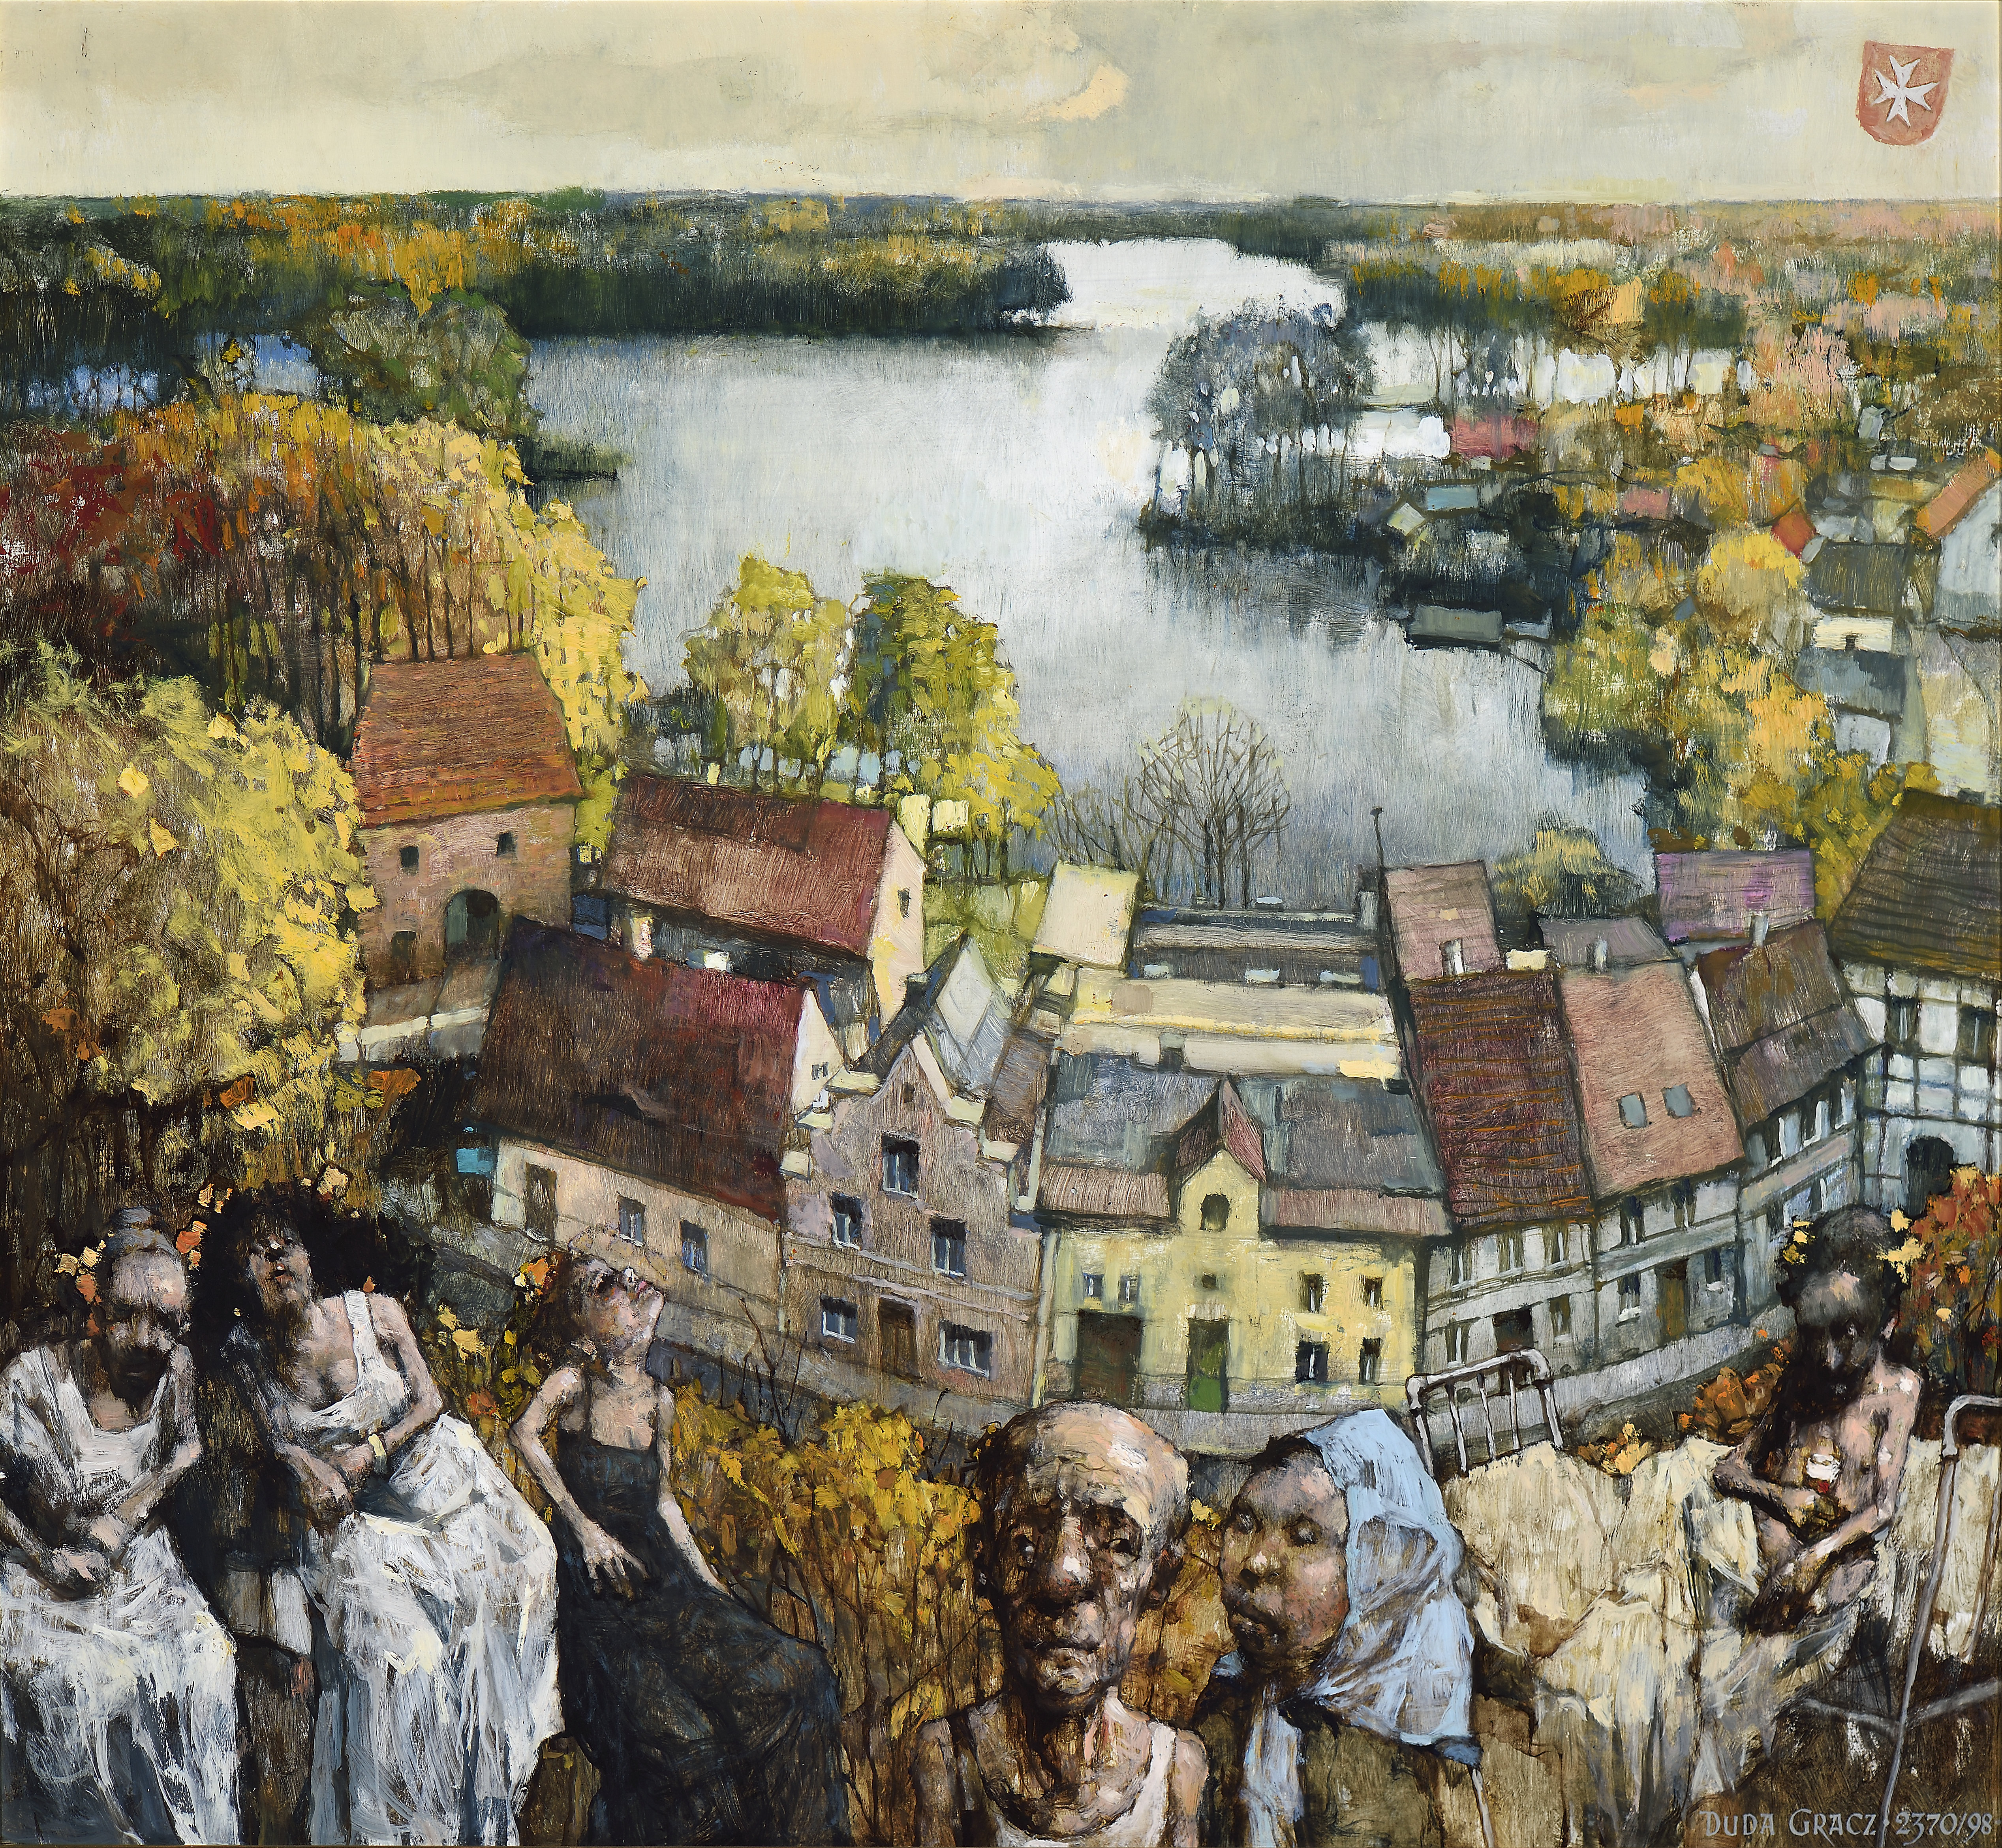 Obraz 2370 (Łagów – Parnas) / Painting 2370 (Łagów – Parnassus), 1998, olej na płycie pilśniowej / oil on fibreboard, 97,5 × 90 cm